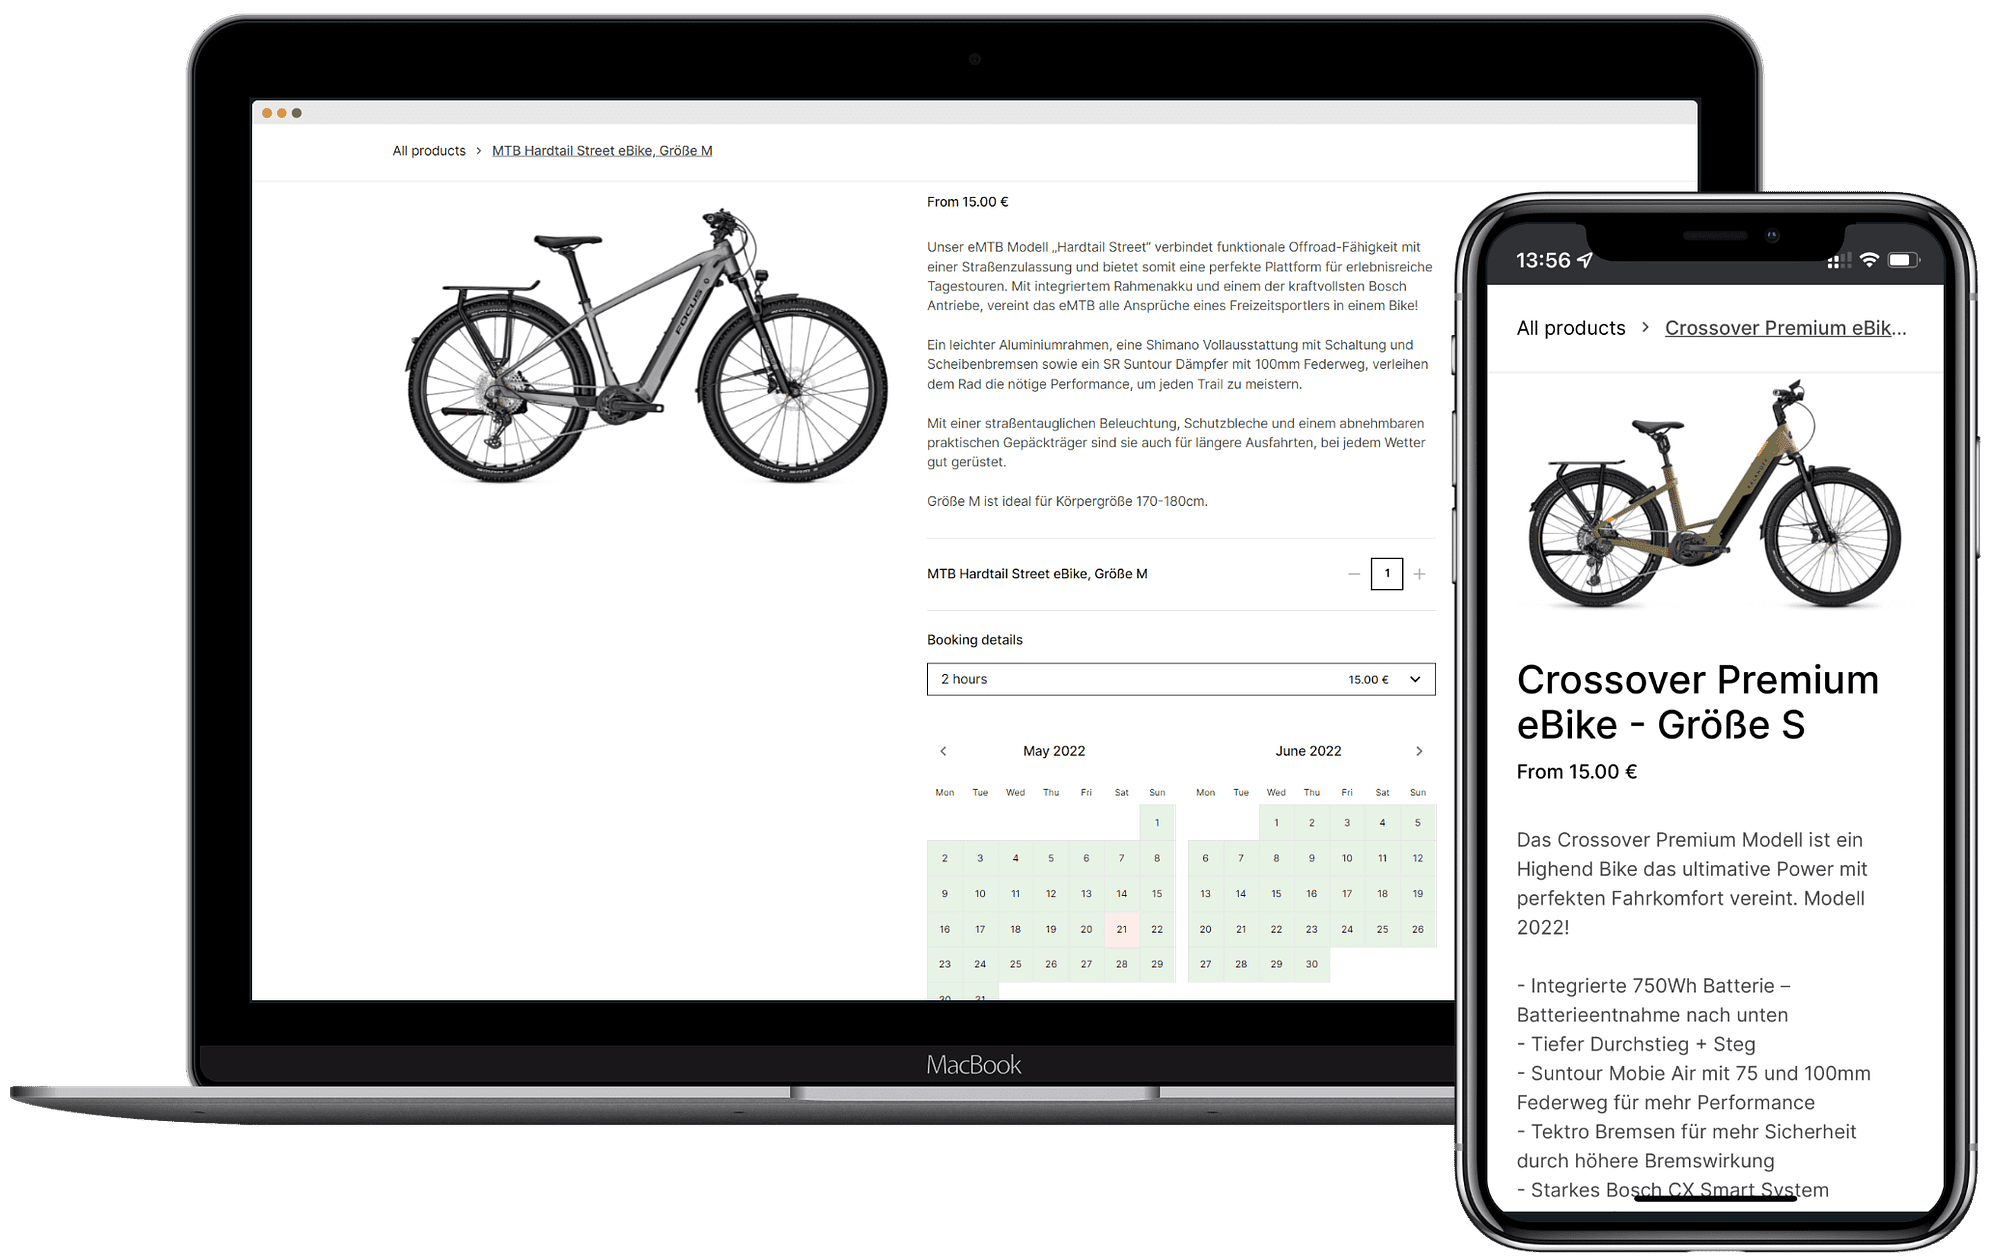 Darstellung der Buchungsengine für die Miete von E-Bikes